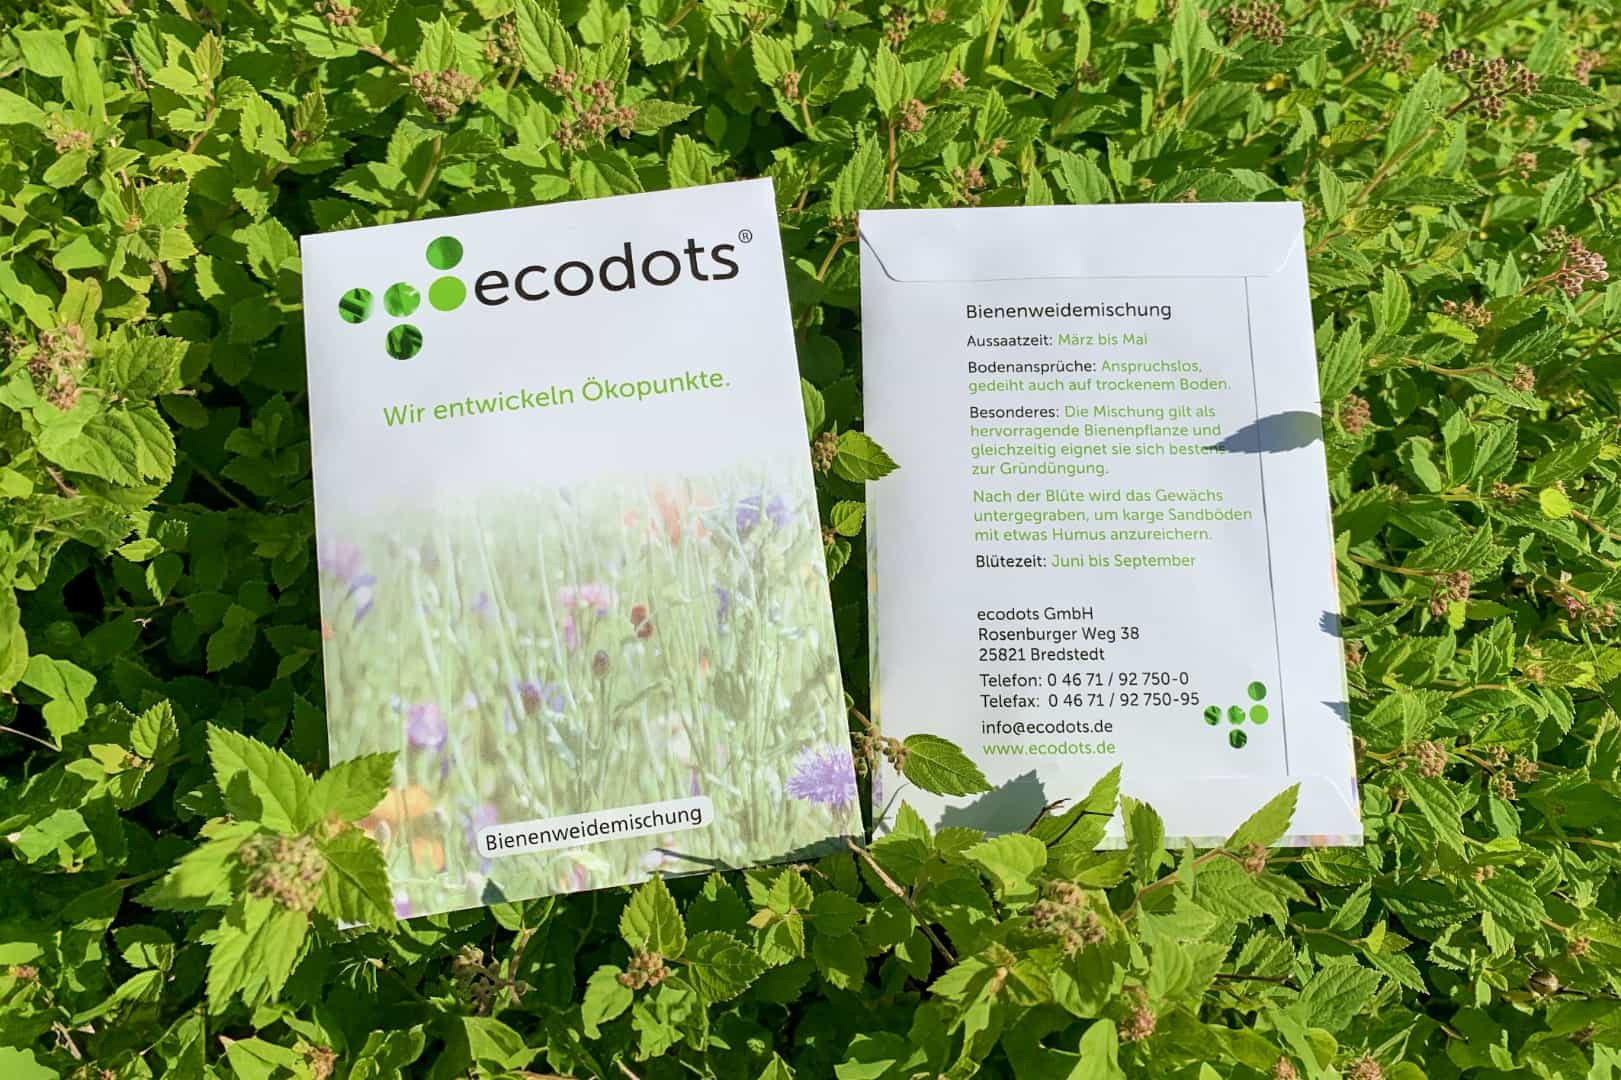 Vorder- und Rückseite der Samentüten von ecodots liegen im Gras